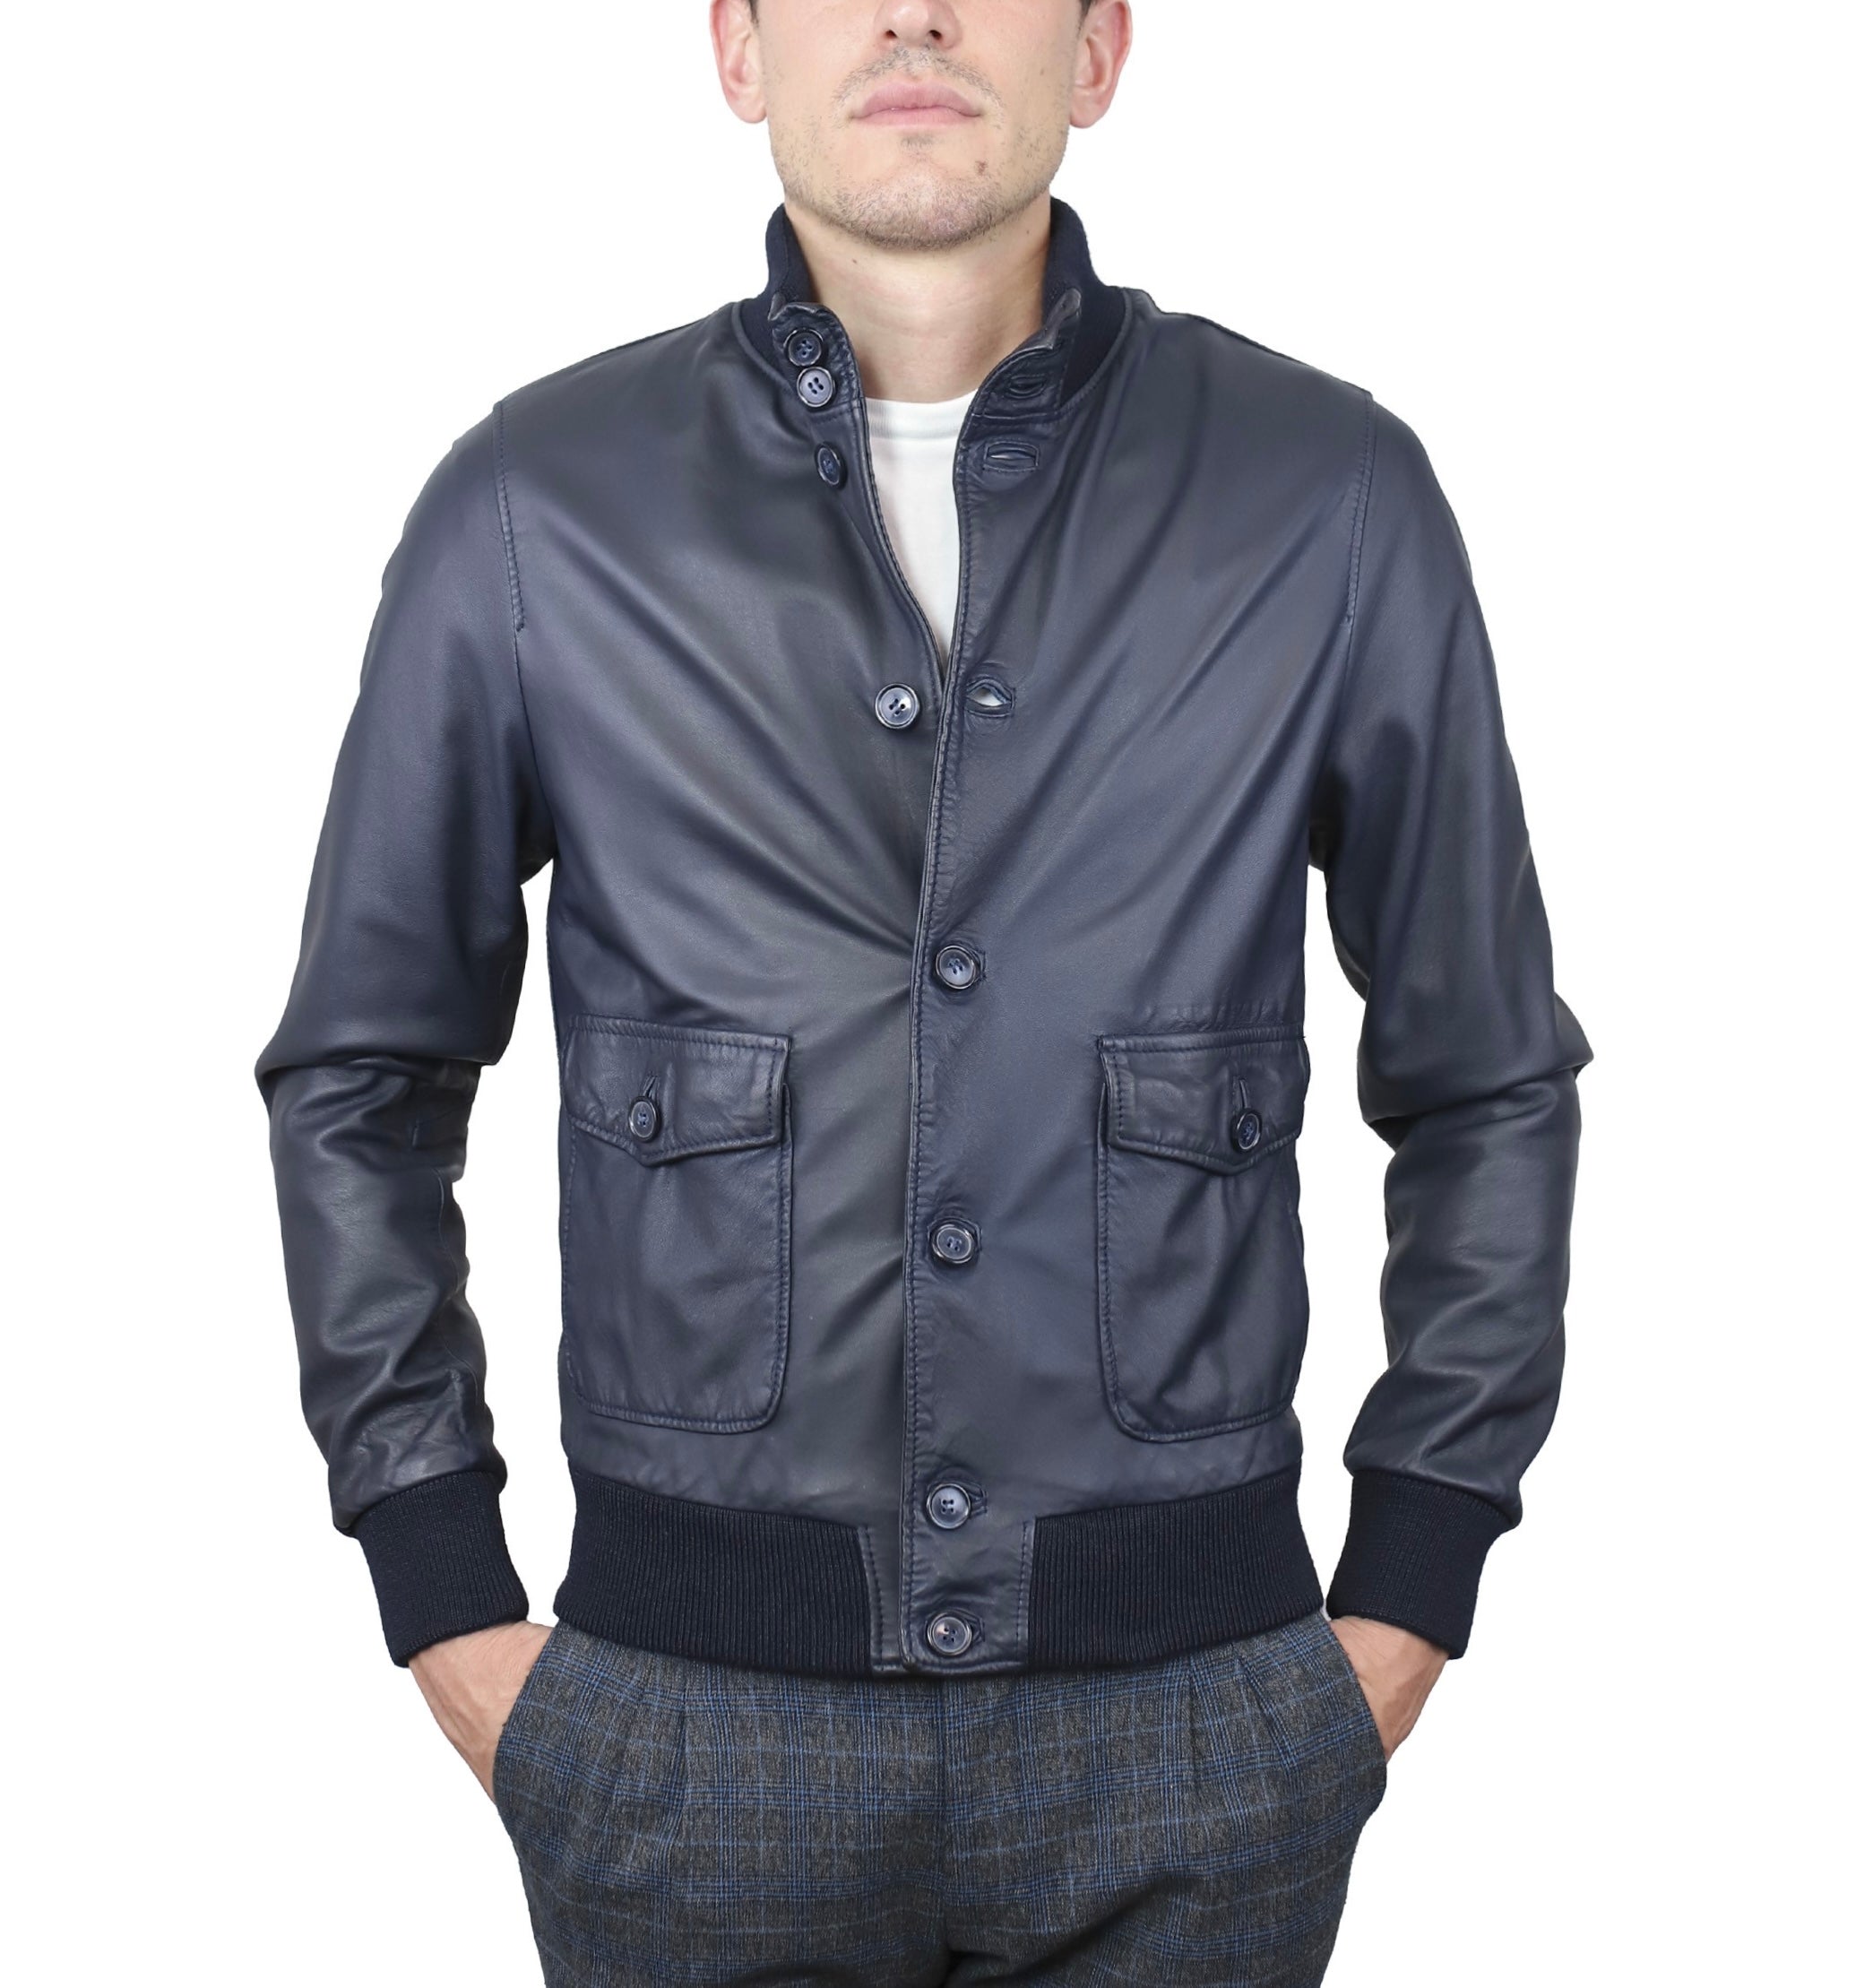 98MNWBL leather jacket